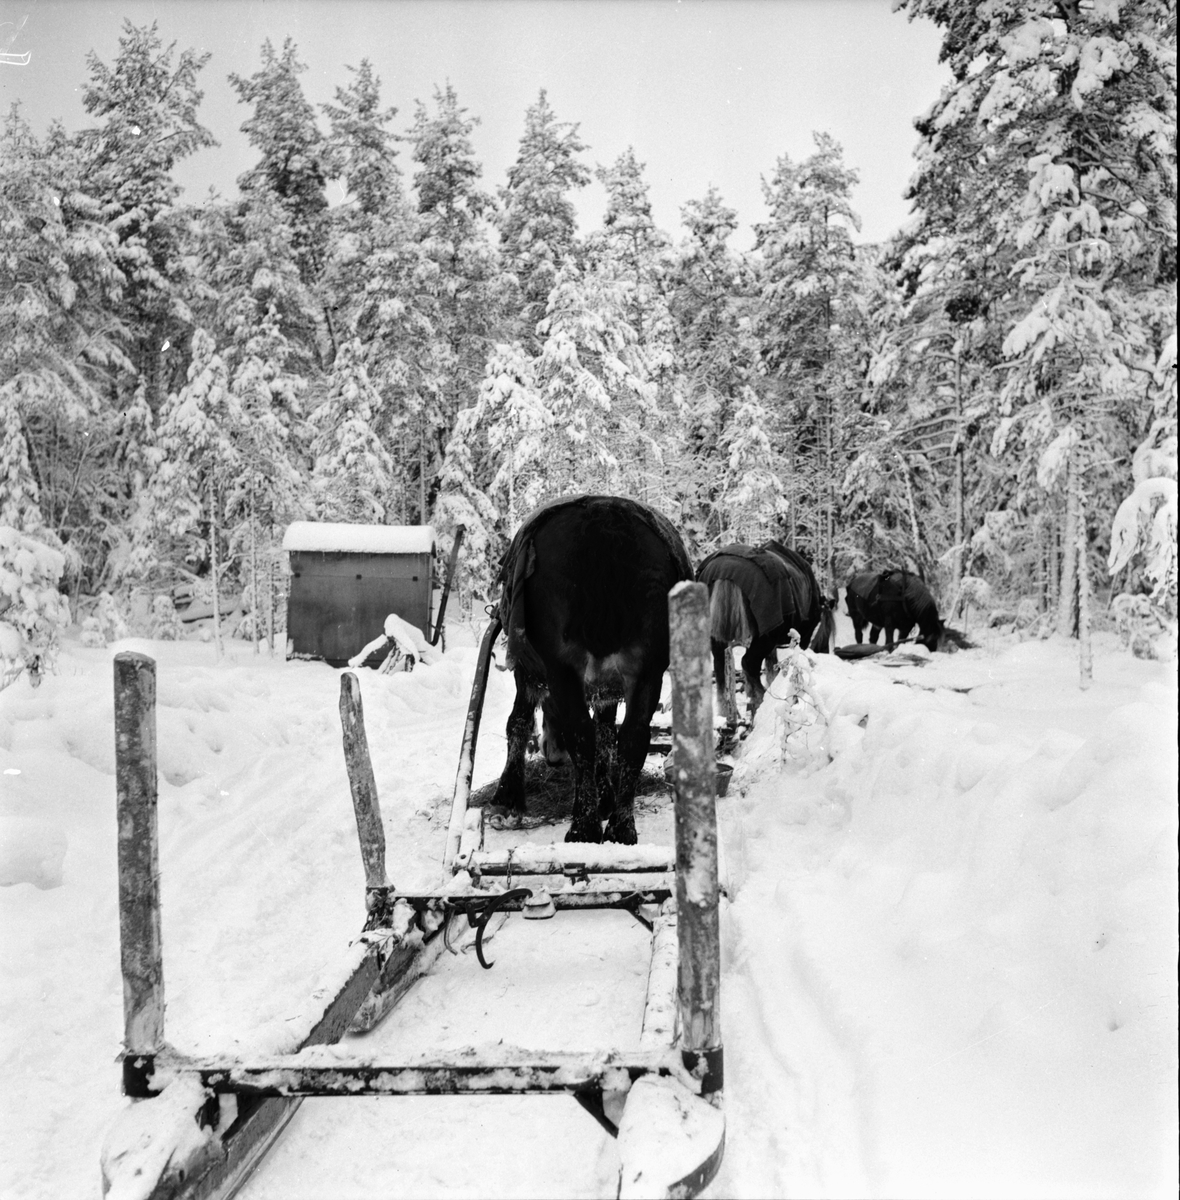 Skog. Skogsrepotage vid Sörbränningen.
26/1-1965